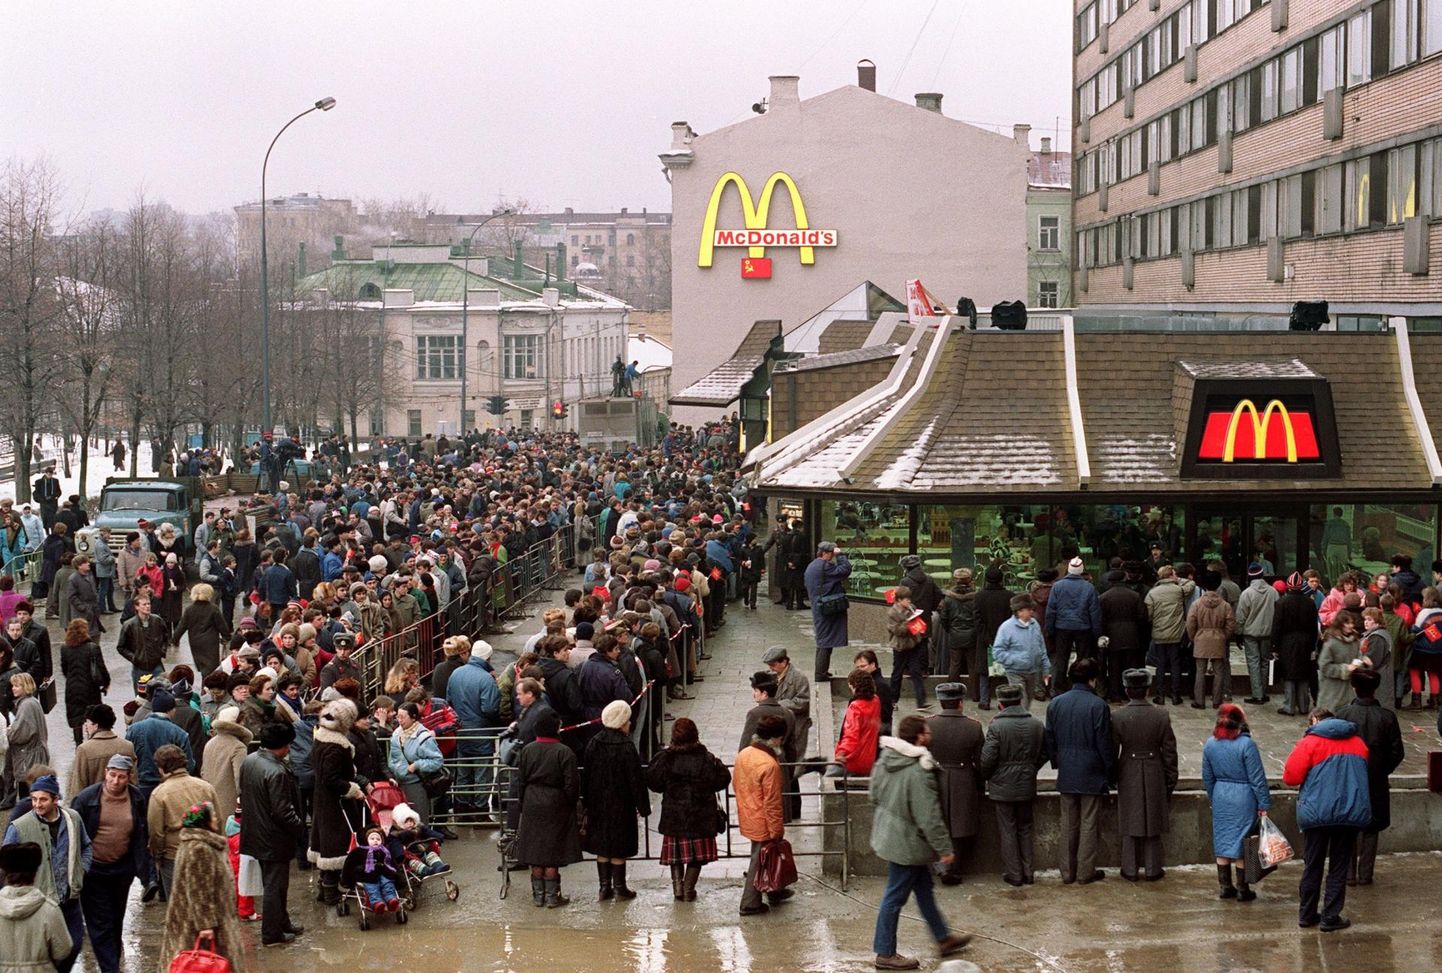 Puškini väljakule kogunes 30 aastat tagasi koidikul 5000 inimest, et McDonald’si restorani uudistada. Kokku käis avapäeval kiirtoidukohas 30 000 inimest. 